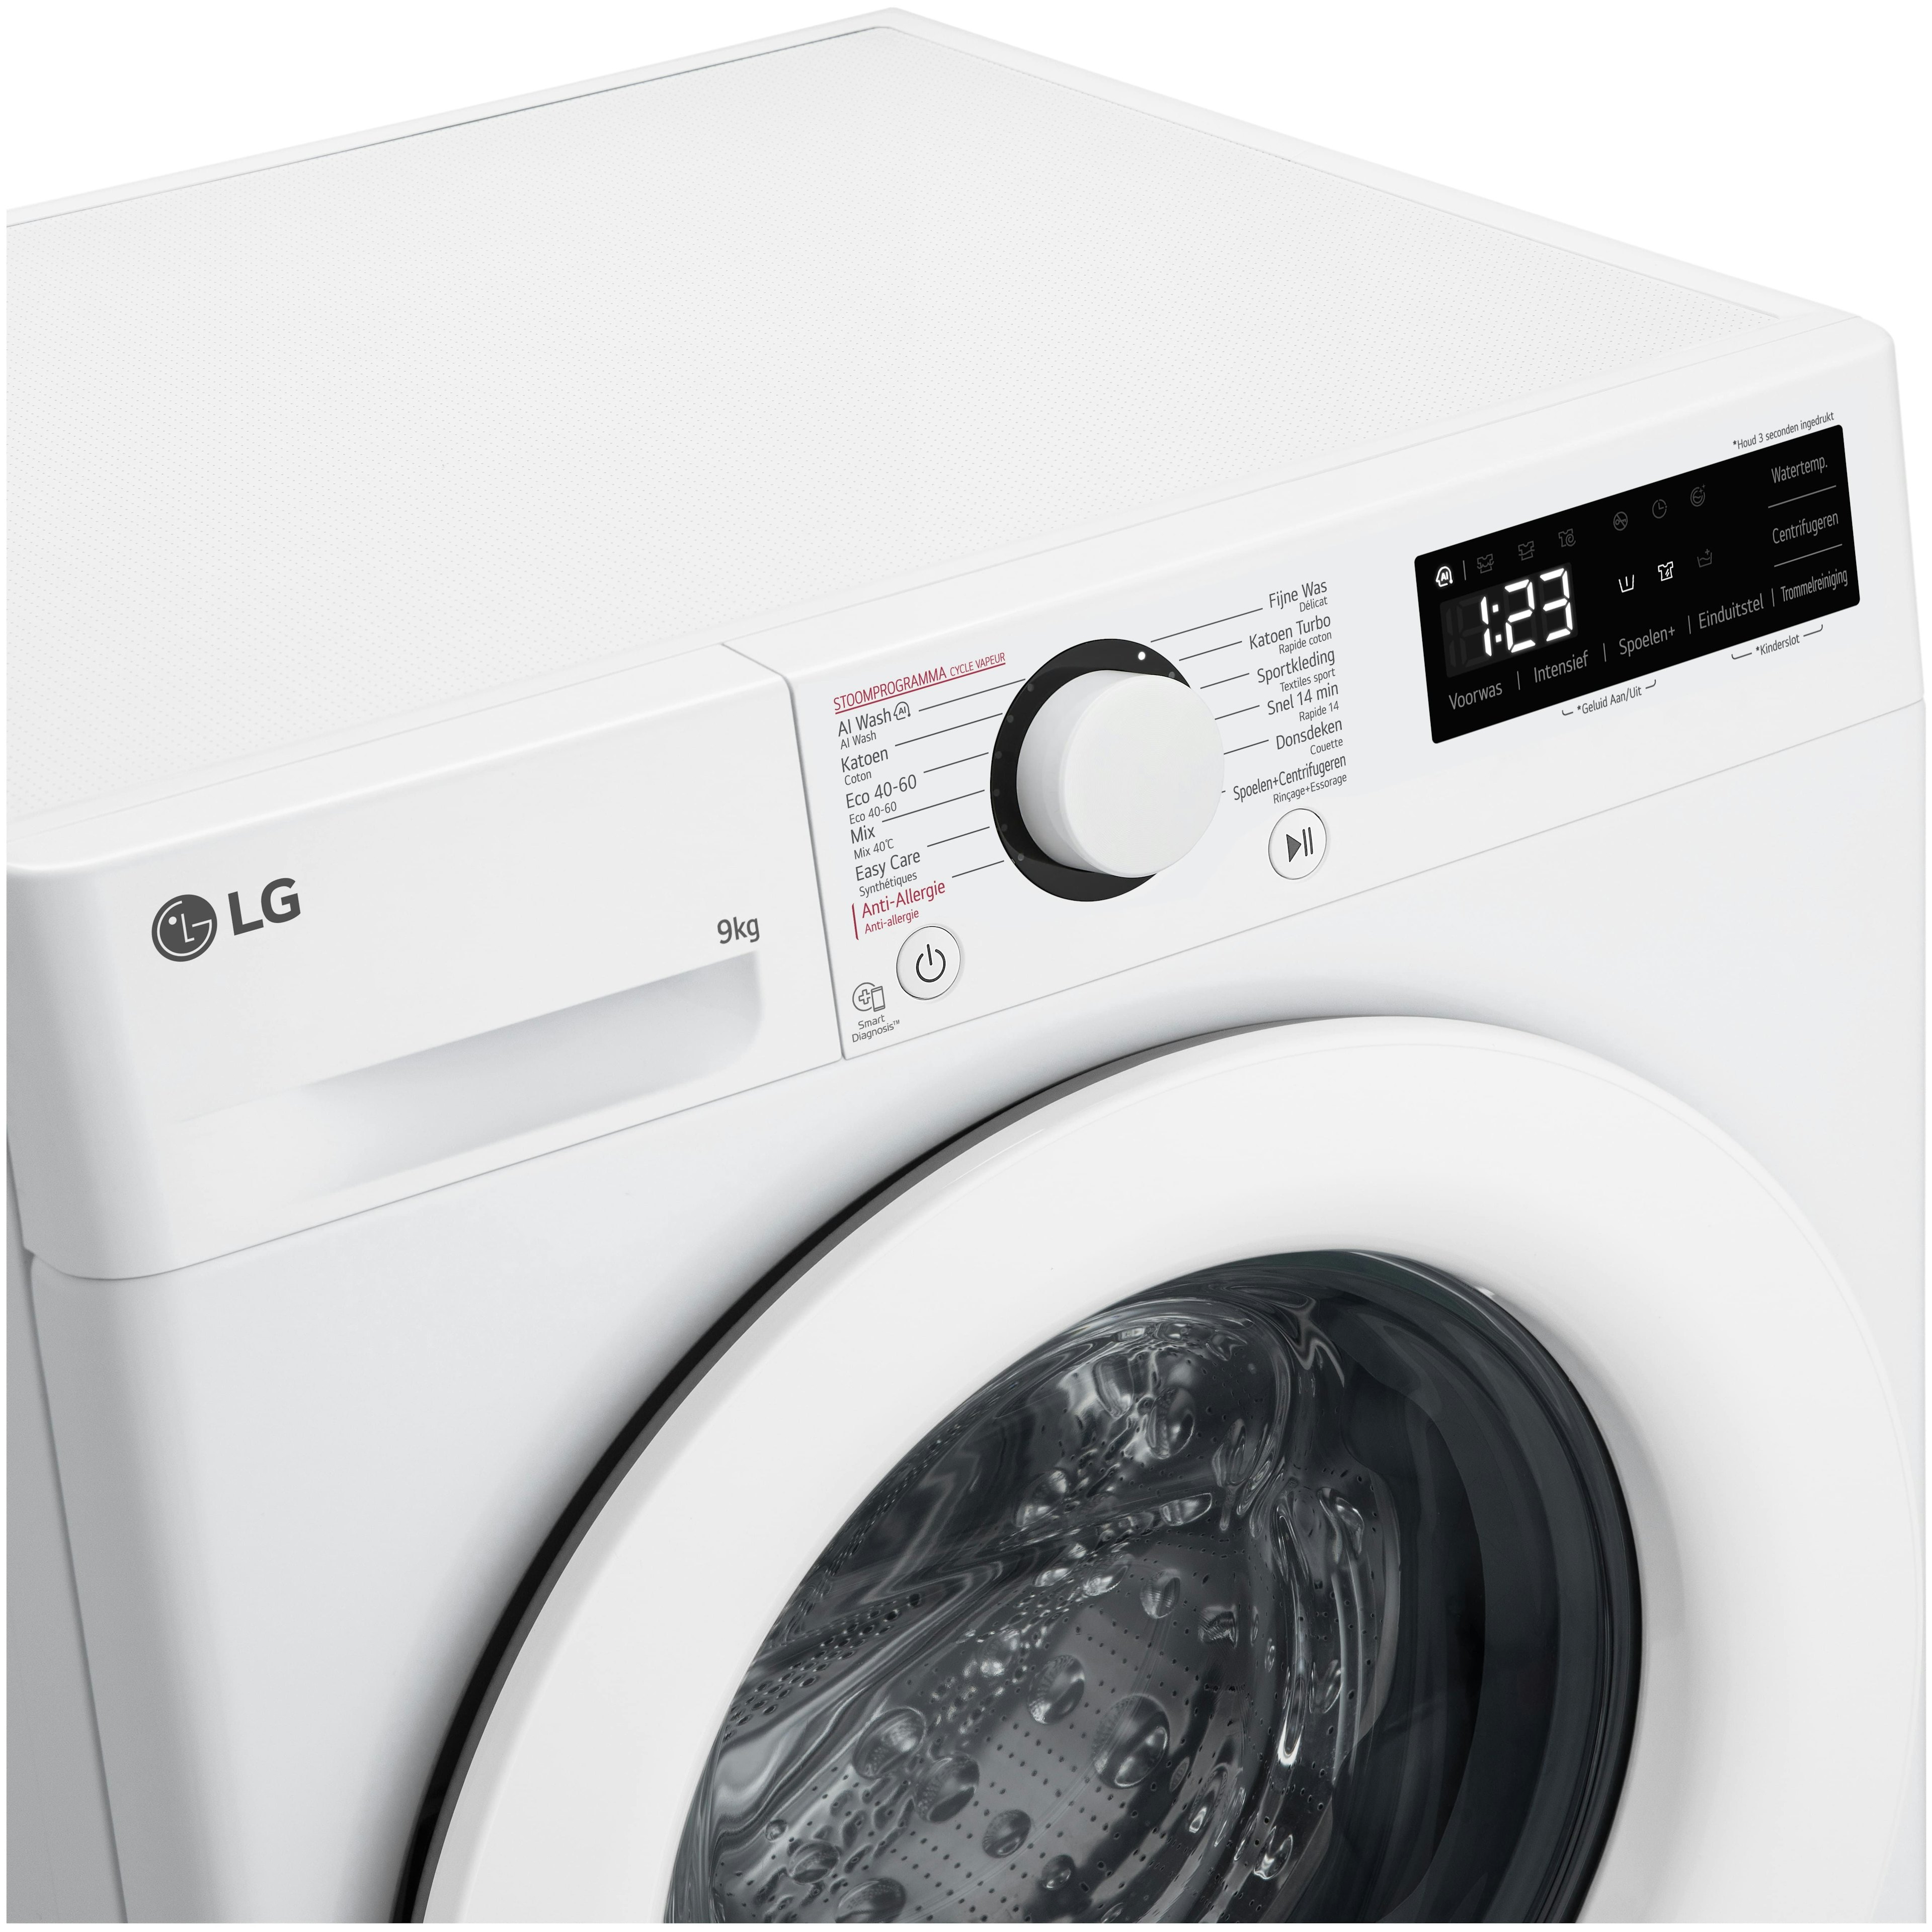 LG wasmachine GC3R309S3 afbeelding 3